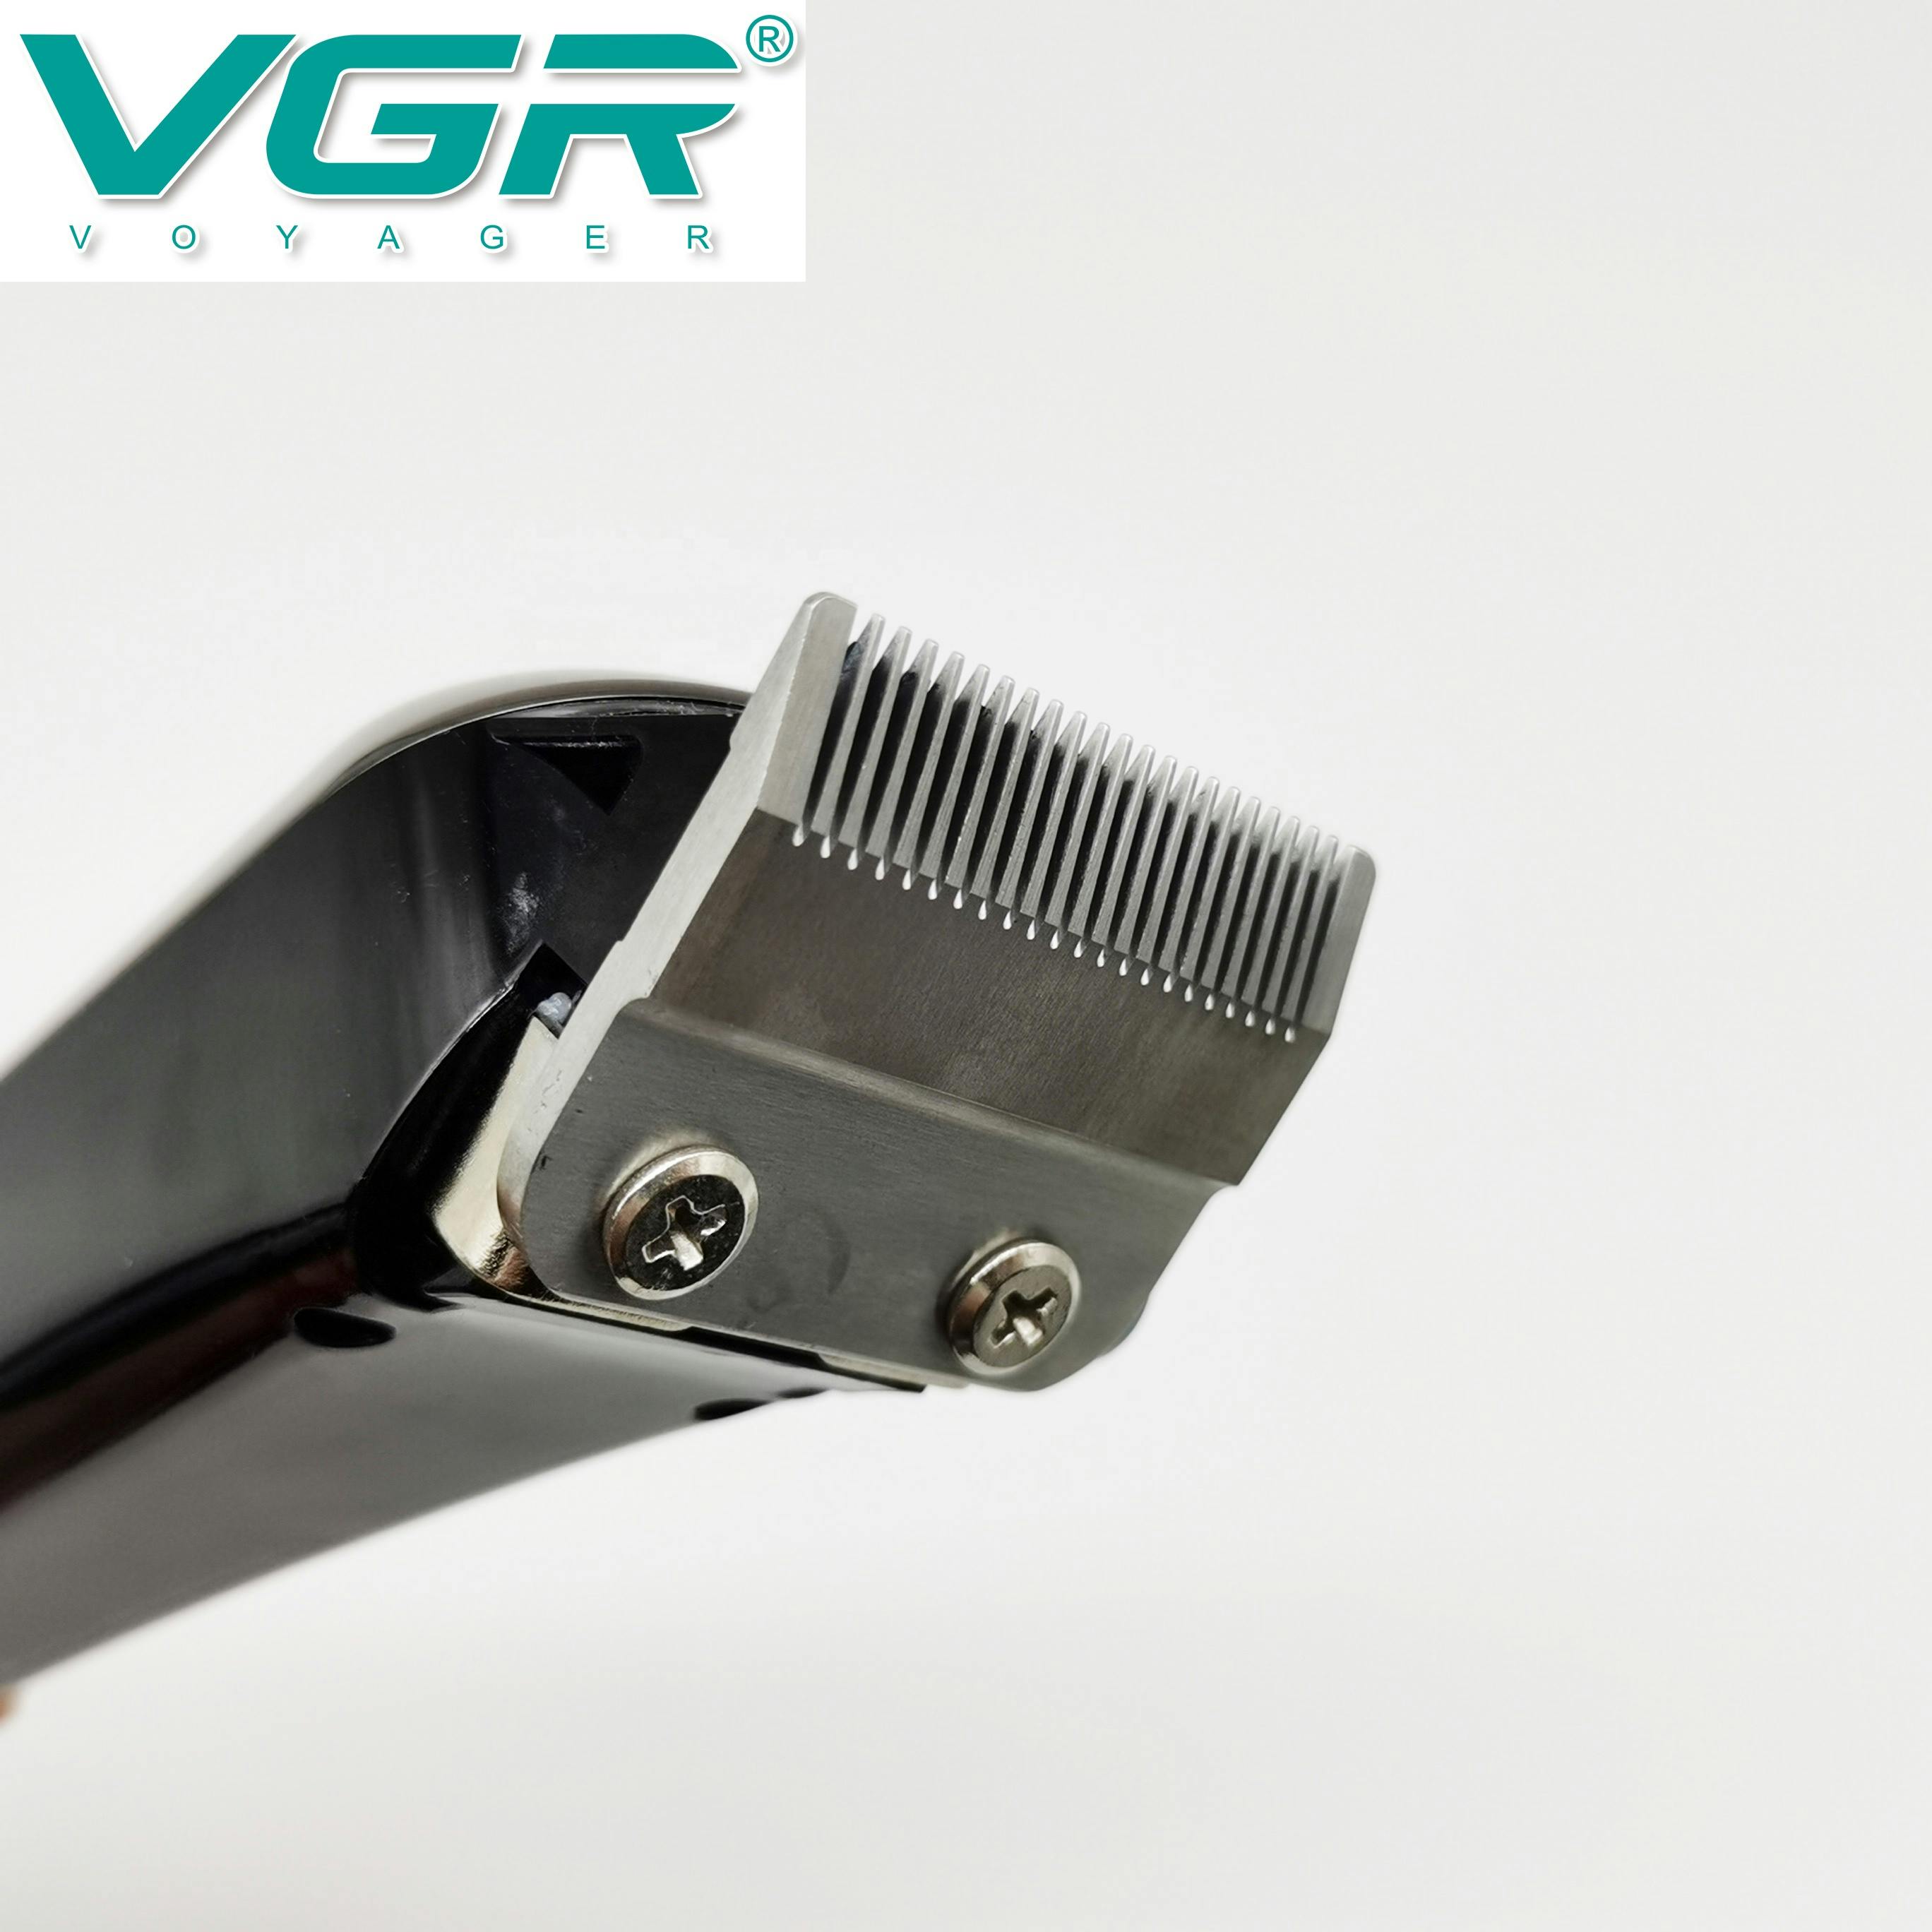 ماكينة حلاقة VGR V-060